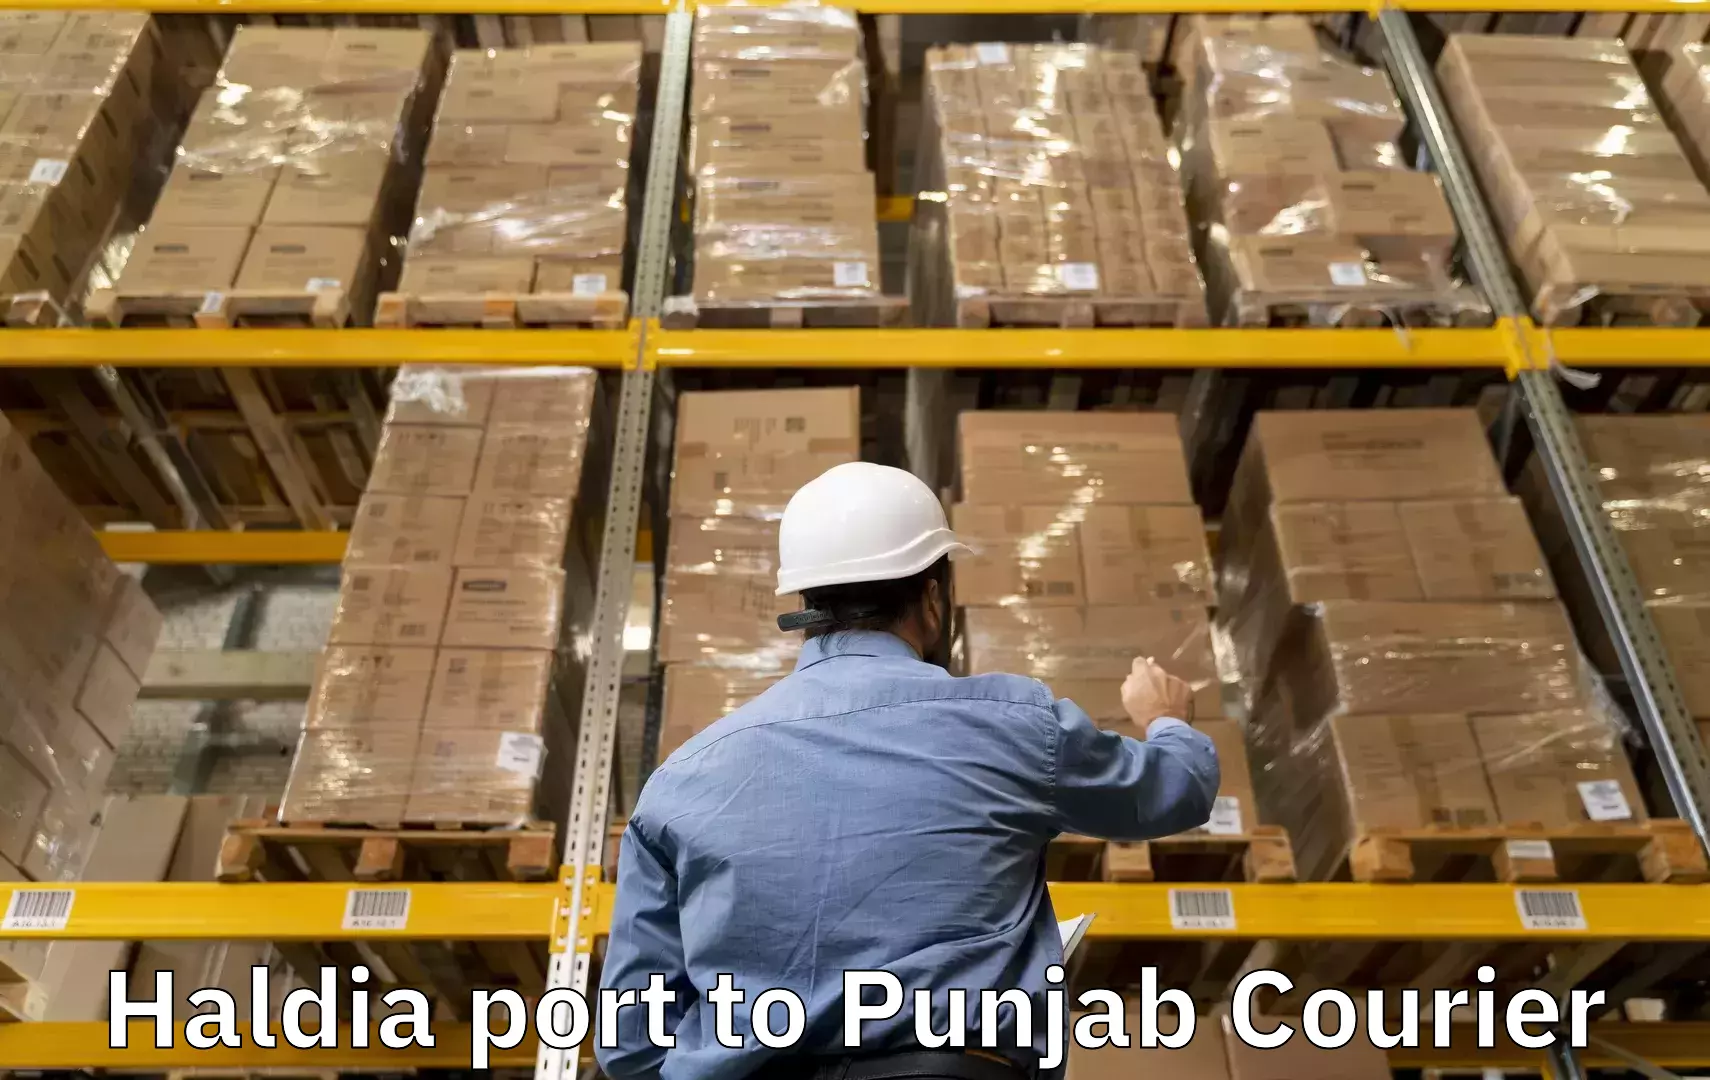 Door to door luggage delivery Haldia port to Punjab